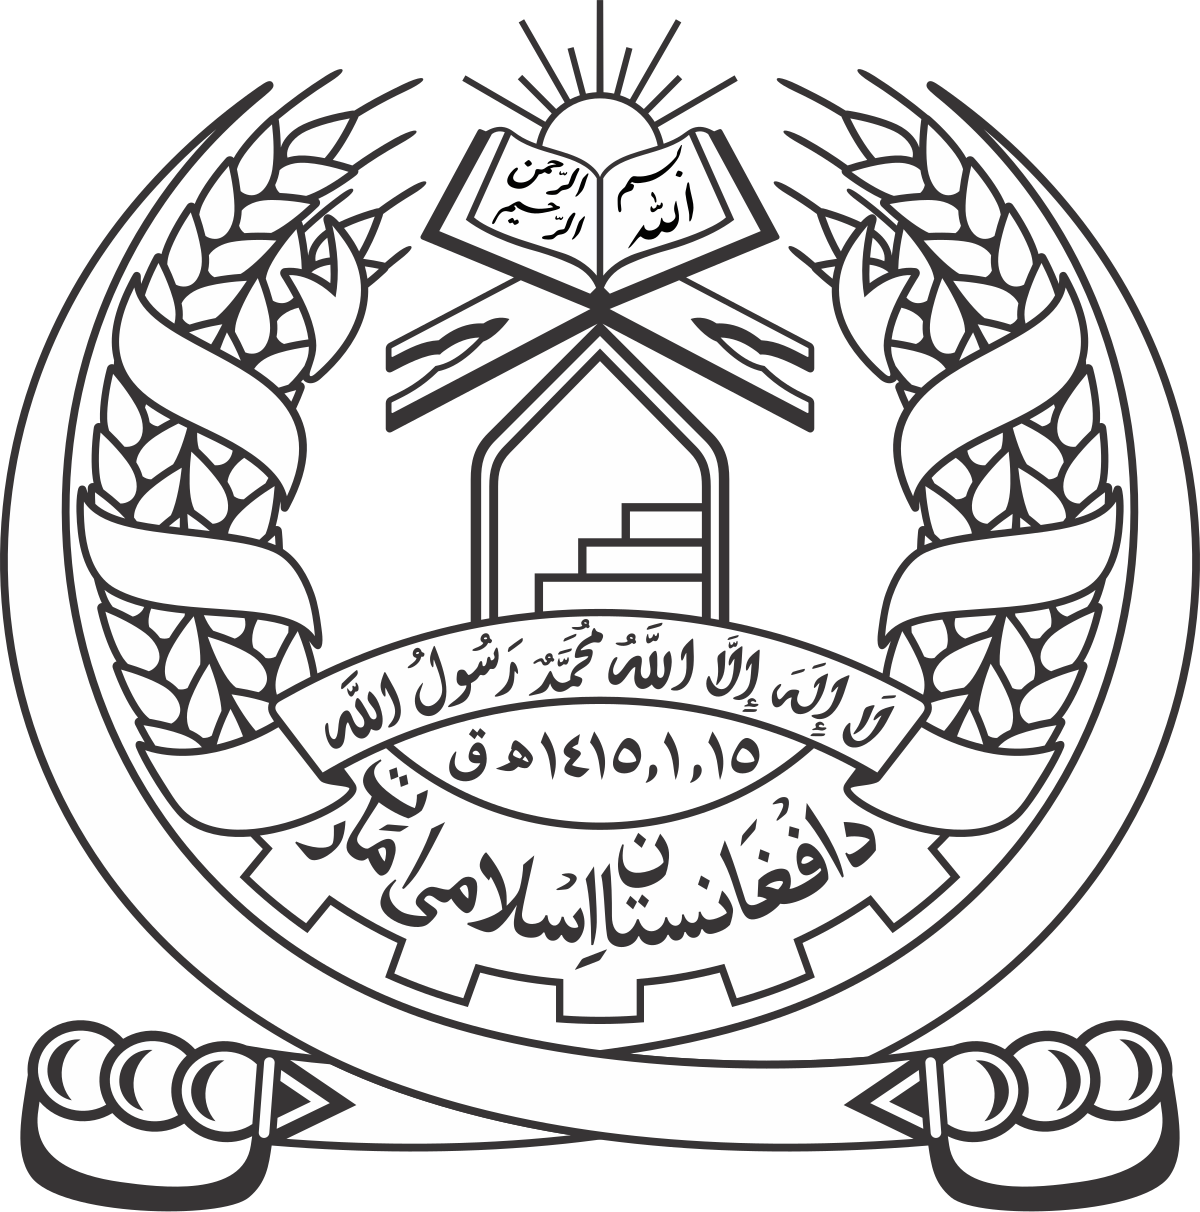 Afghan Army - Wikipedia